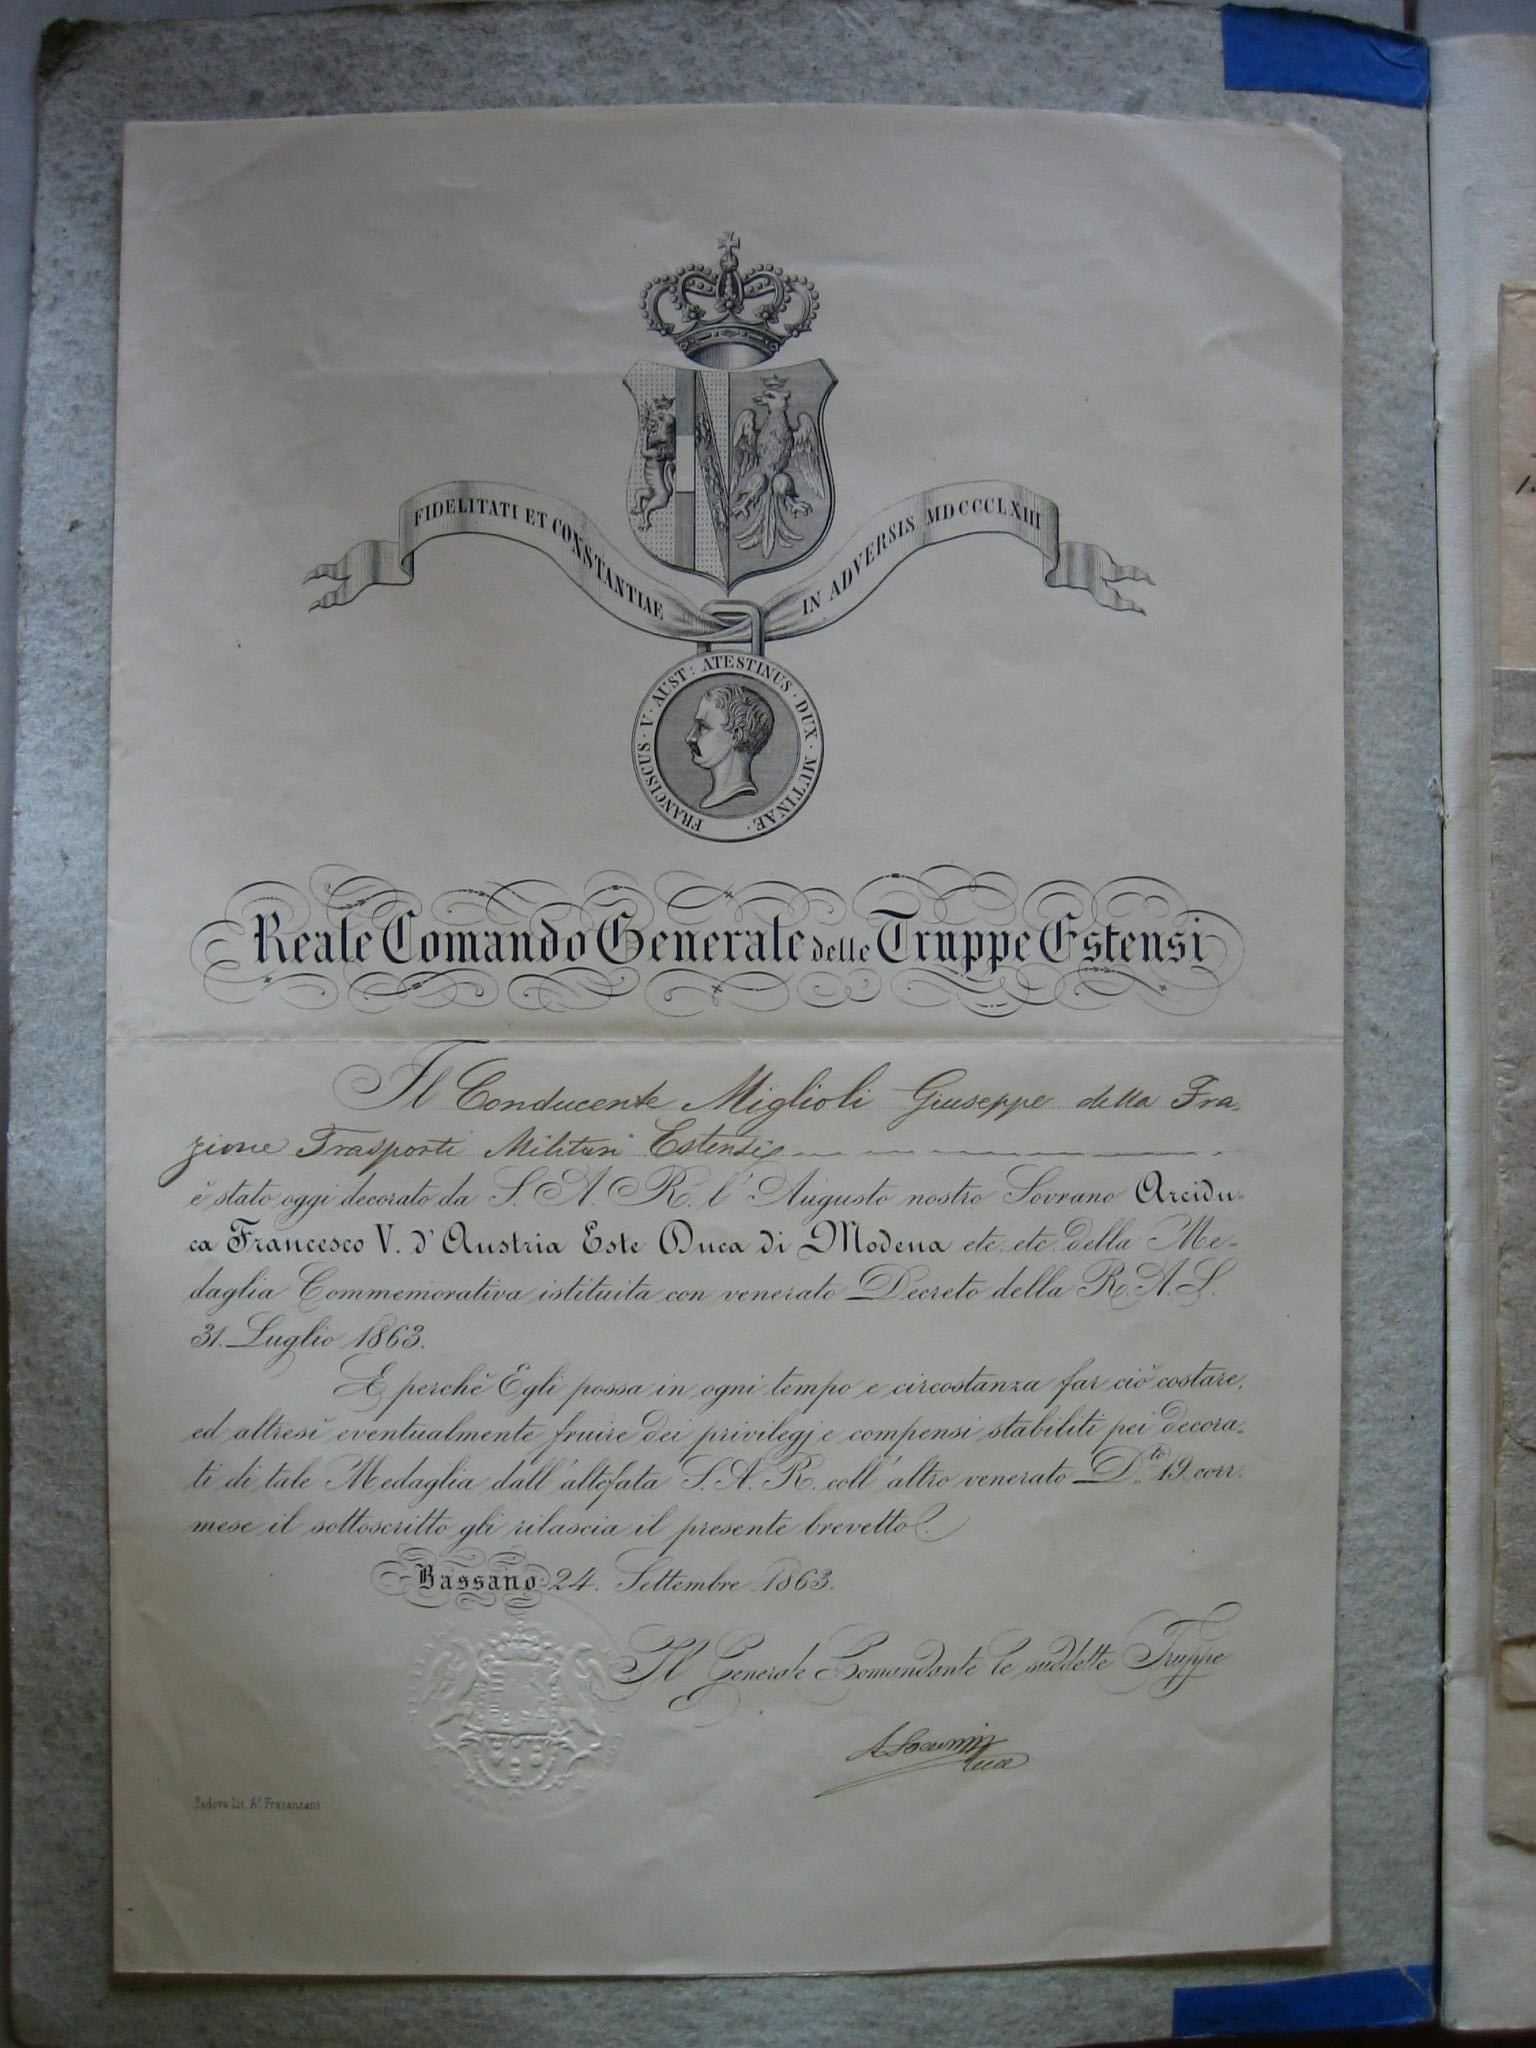 Diploma della medaglia dell'emigrazione, commemorativa dello scioglimento della Brigata Estense. Ogni singolo documento venne firmato dal generale Saccozzi (Archivio di Stato di Modena, Archivio delle Brigata Estense, b. 47).